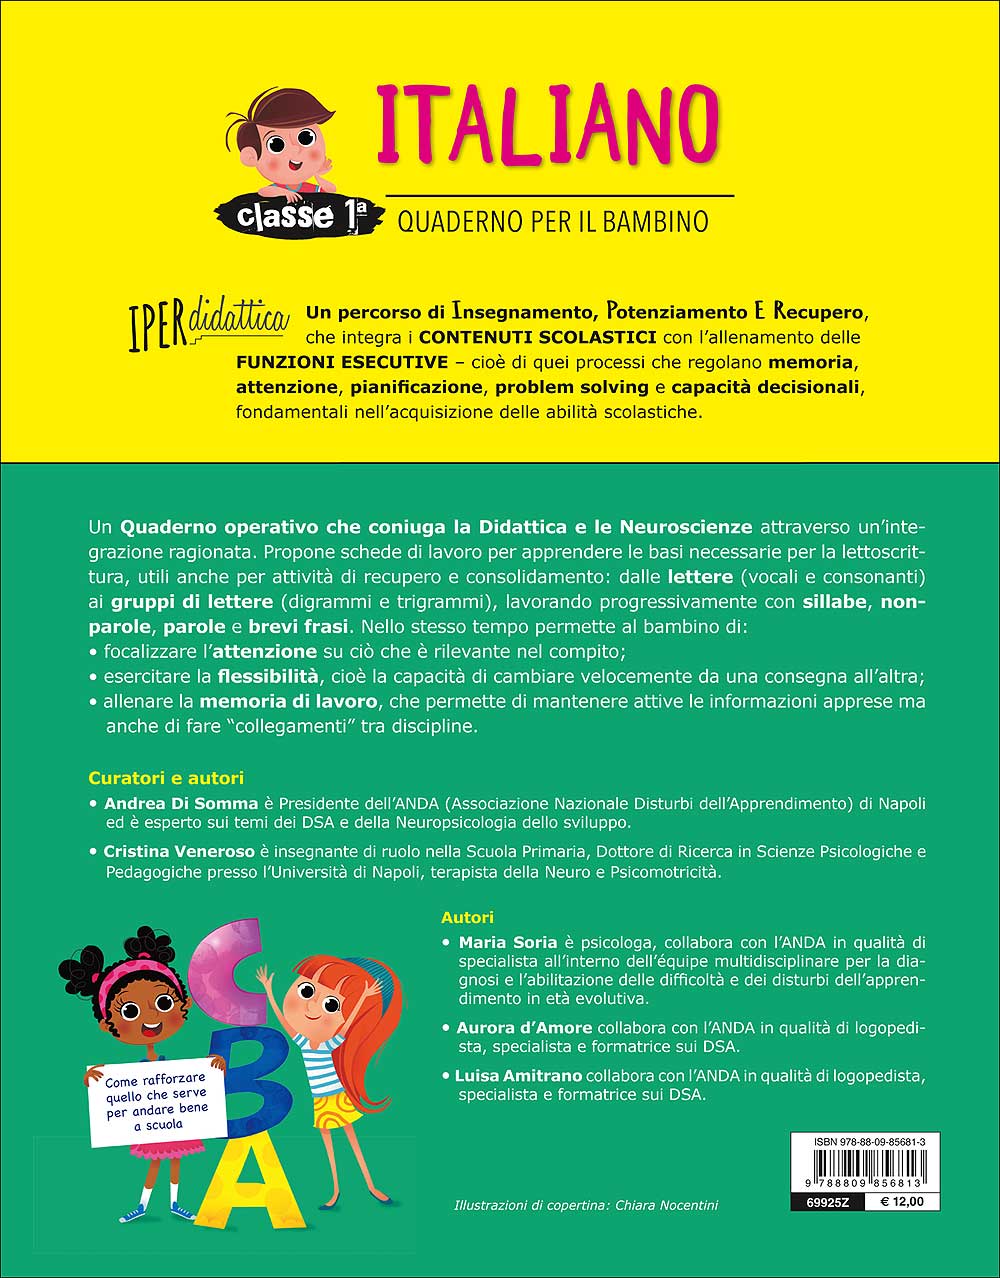 Quaderno per il bambino - Italiano 1::Come rafforzare quello che serve per andare bene a scuola